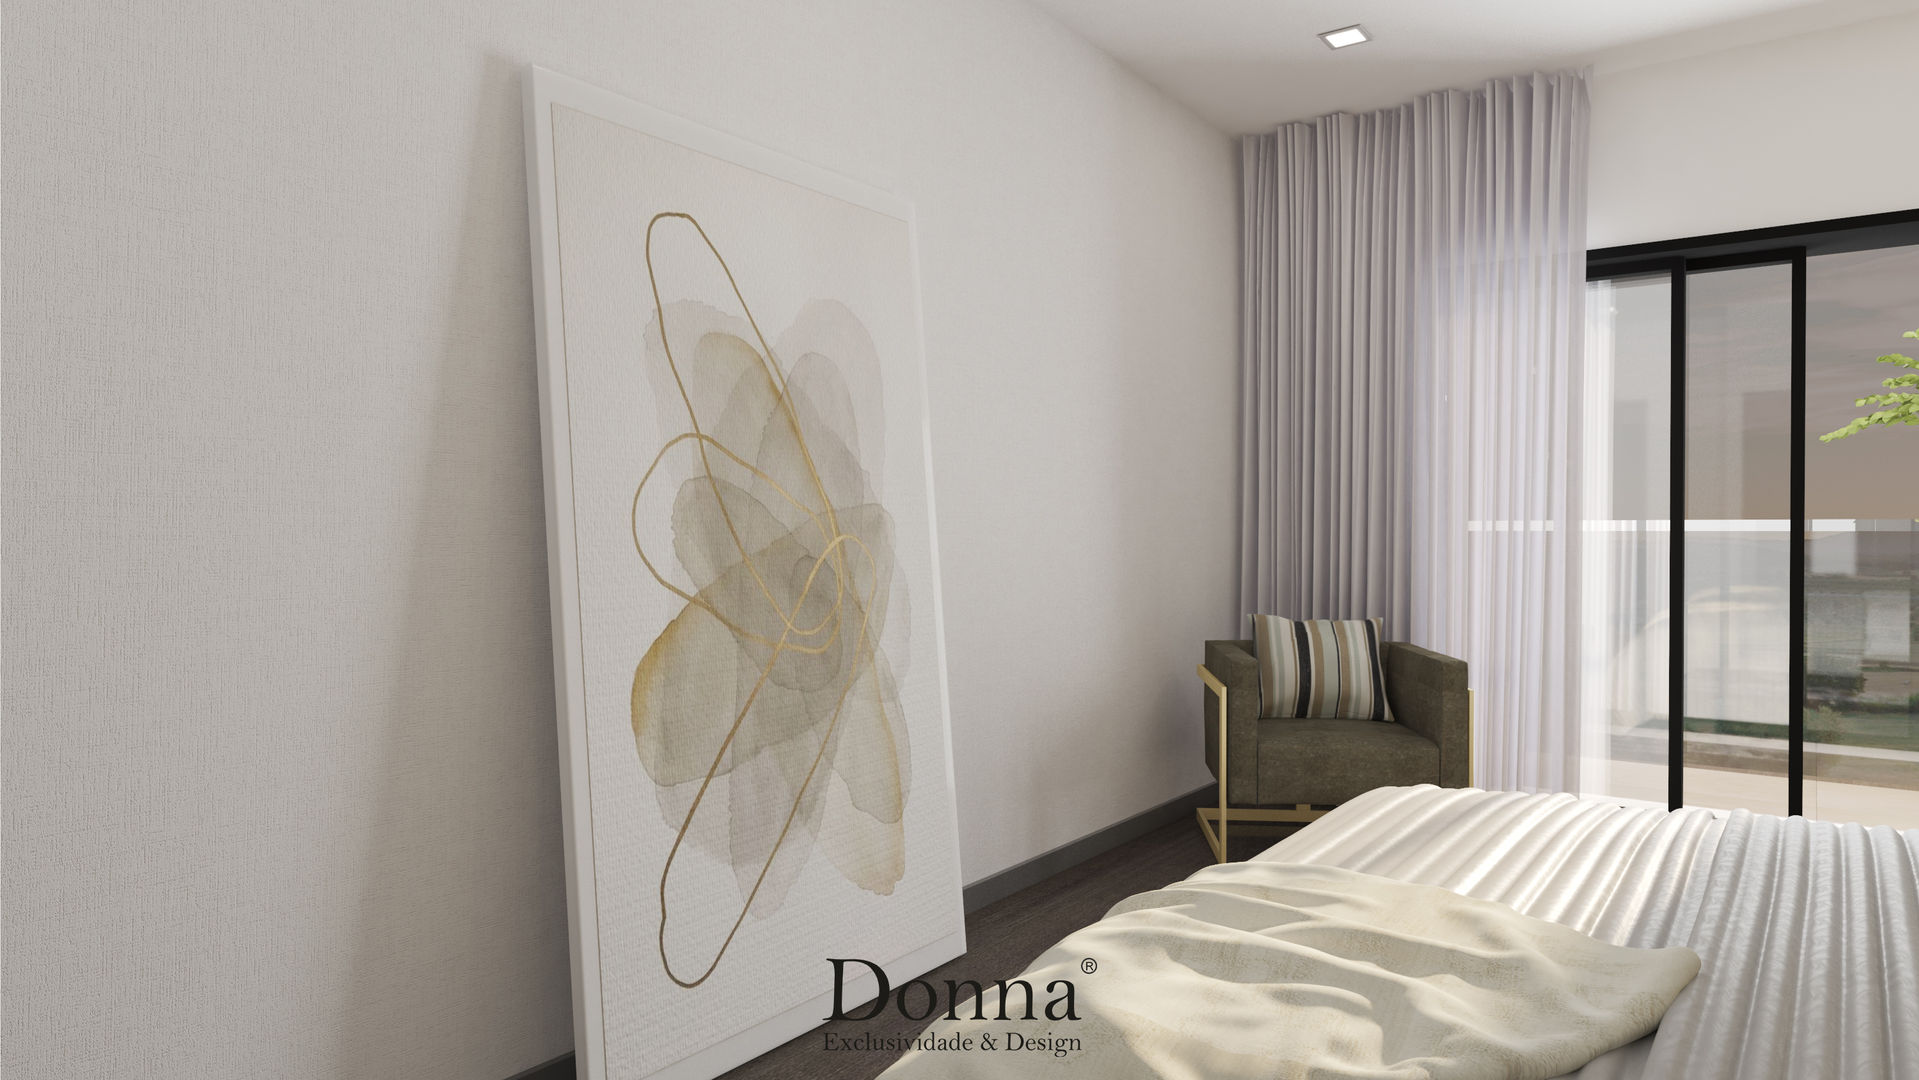 Projeto de Interiores 3D em Apartamento no Montijo , Donna - Exclusividade e Design Donna - Exclusividade e Design Nowoczesna sypialnia